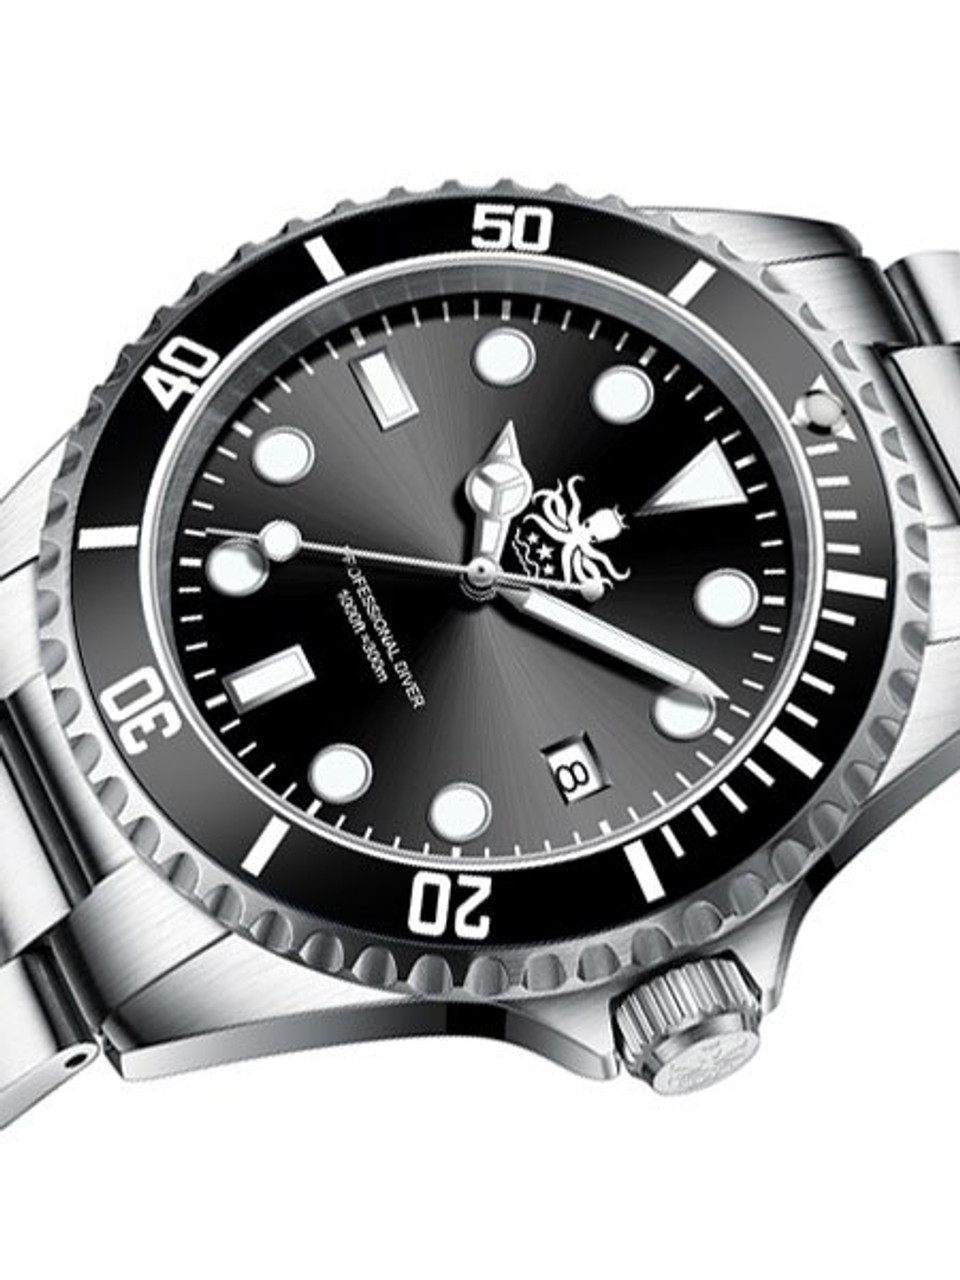 phoibos men's px002c 300m dive watch